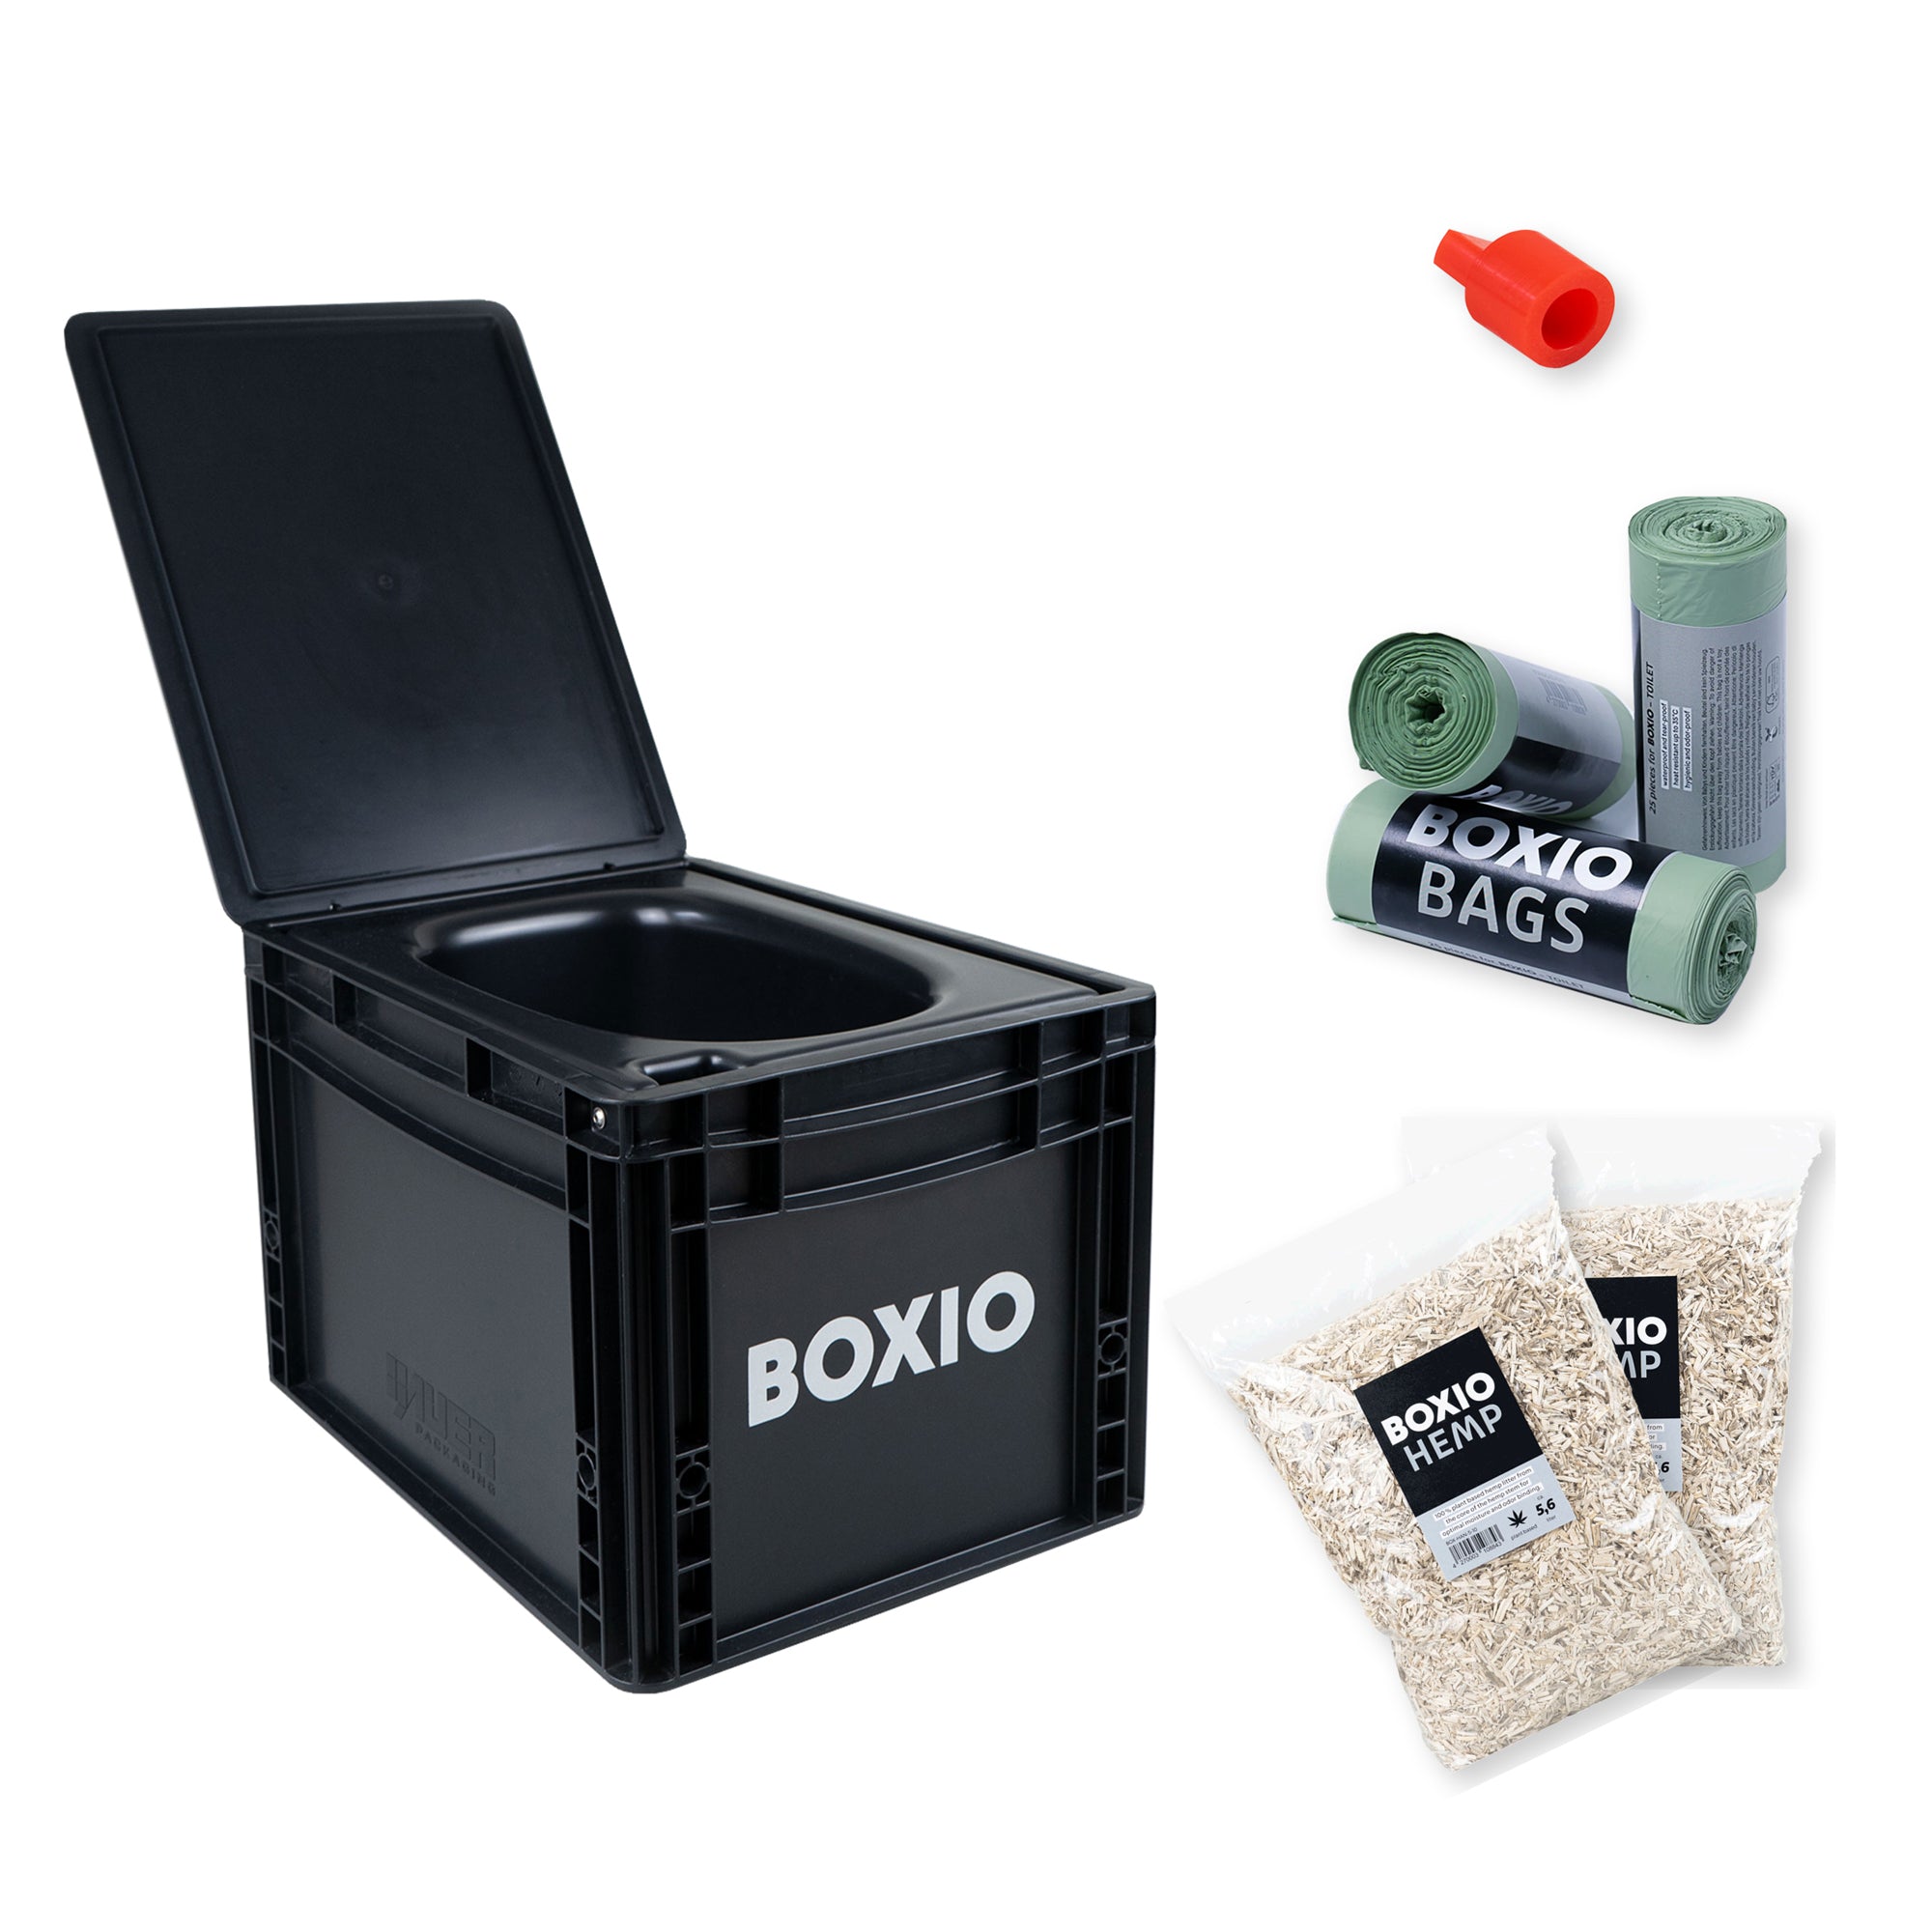 BOXIO - TOILET Plus composting toilet starter kit